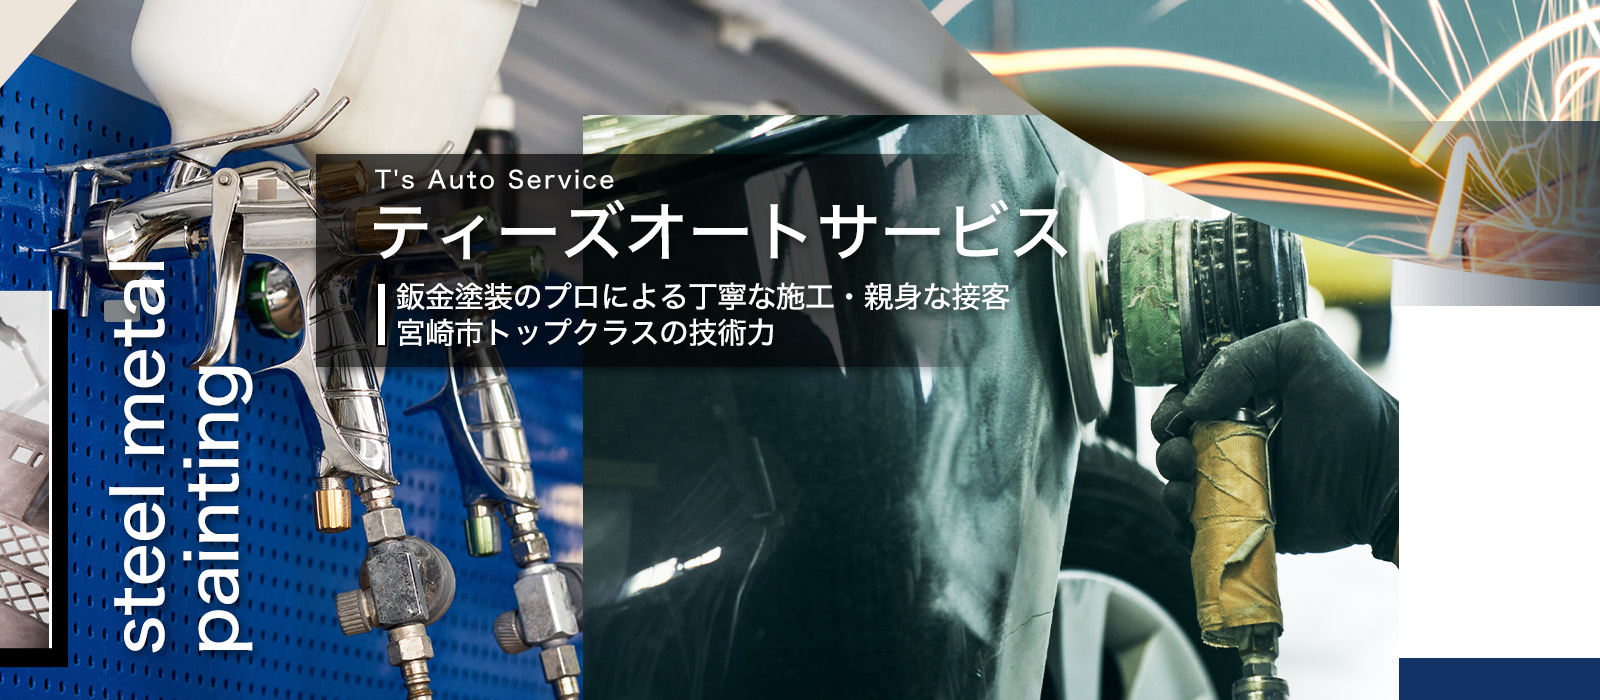 ティーズオートサービス 板金塗装のプロによる丁寧な施工・親身な接客・宮崎市トップクラスの技術力